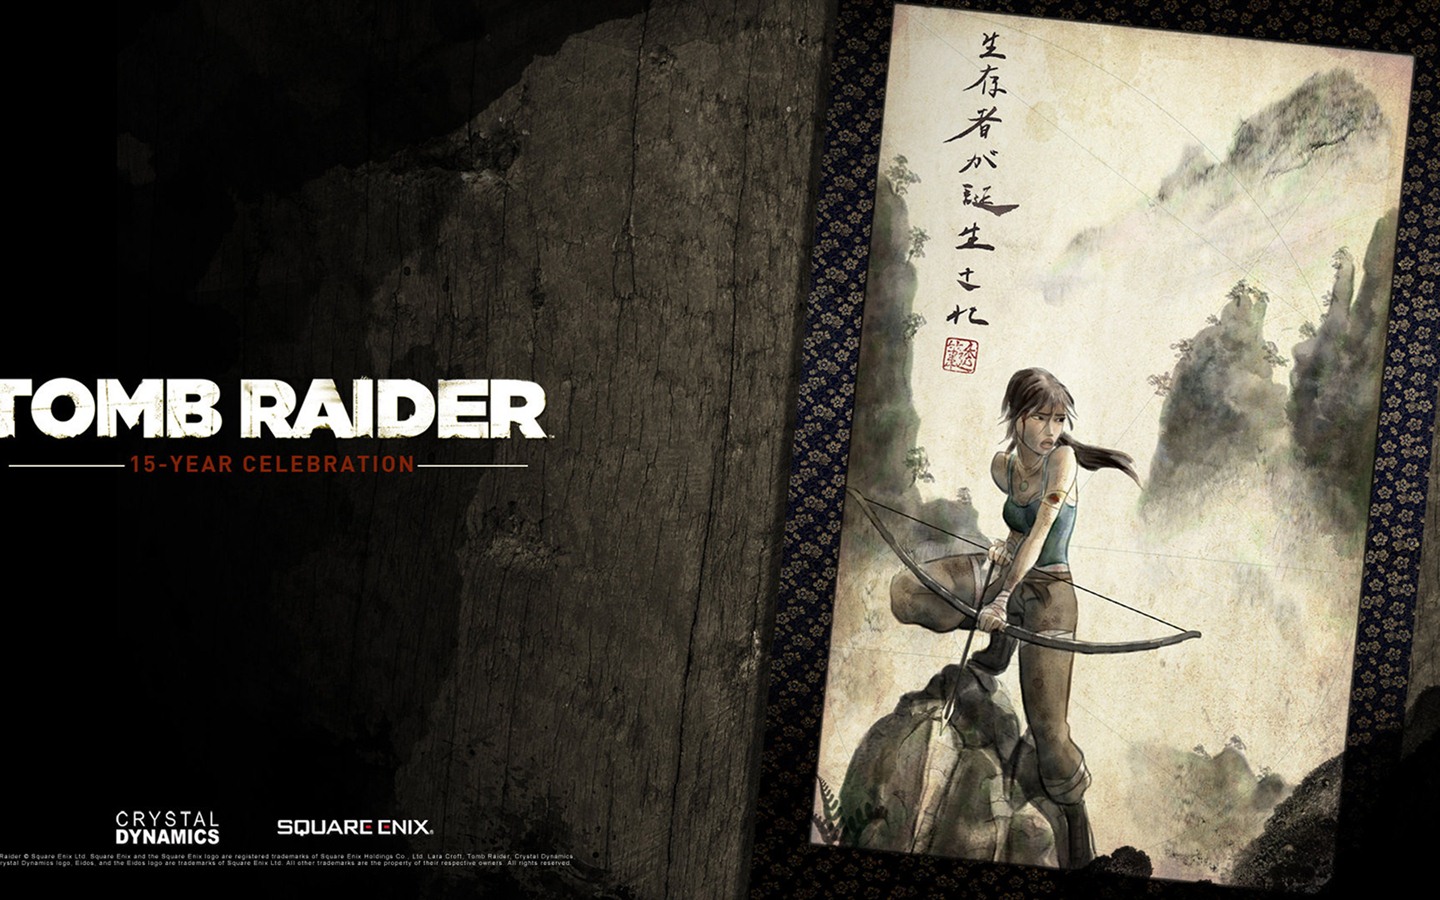 Tomb Raider 15-Year Celebration 古墓丽影15周年纪念版 高清壁纸14 - 1440x900